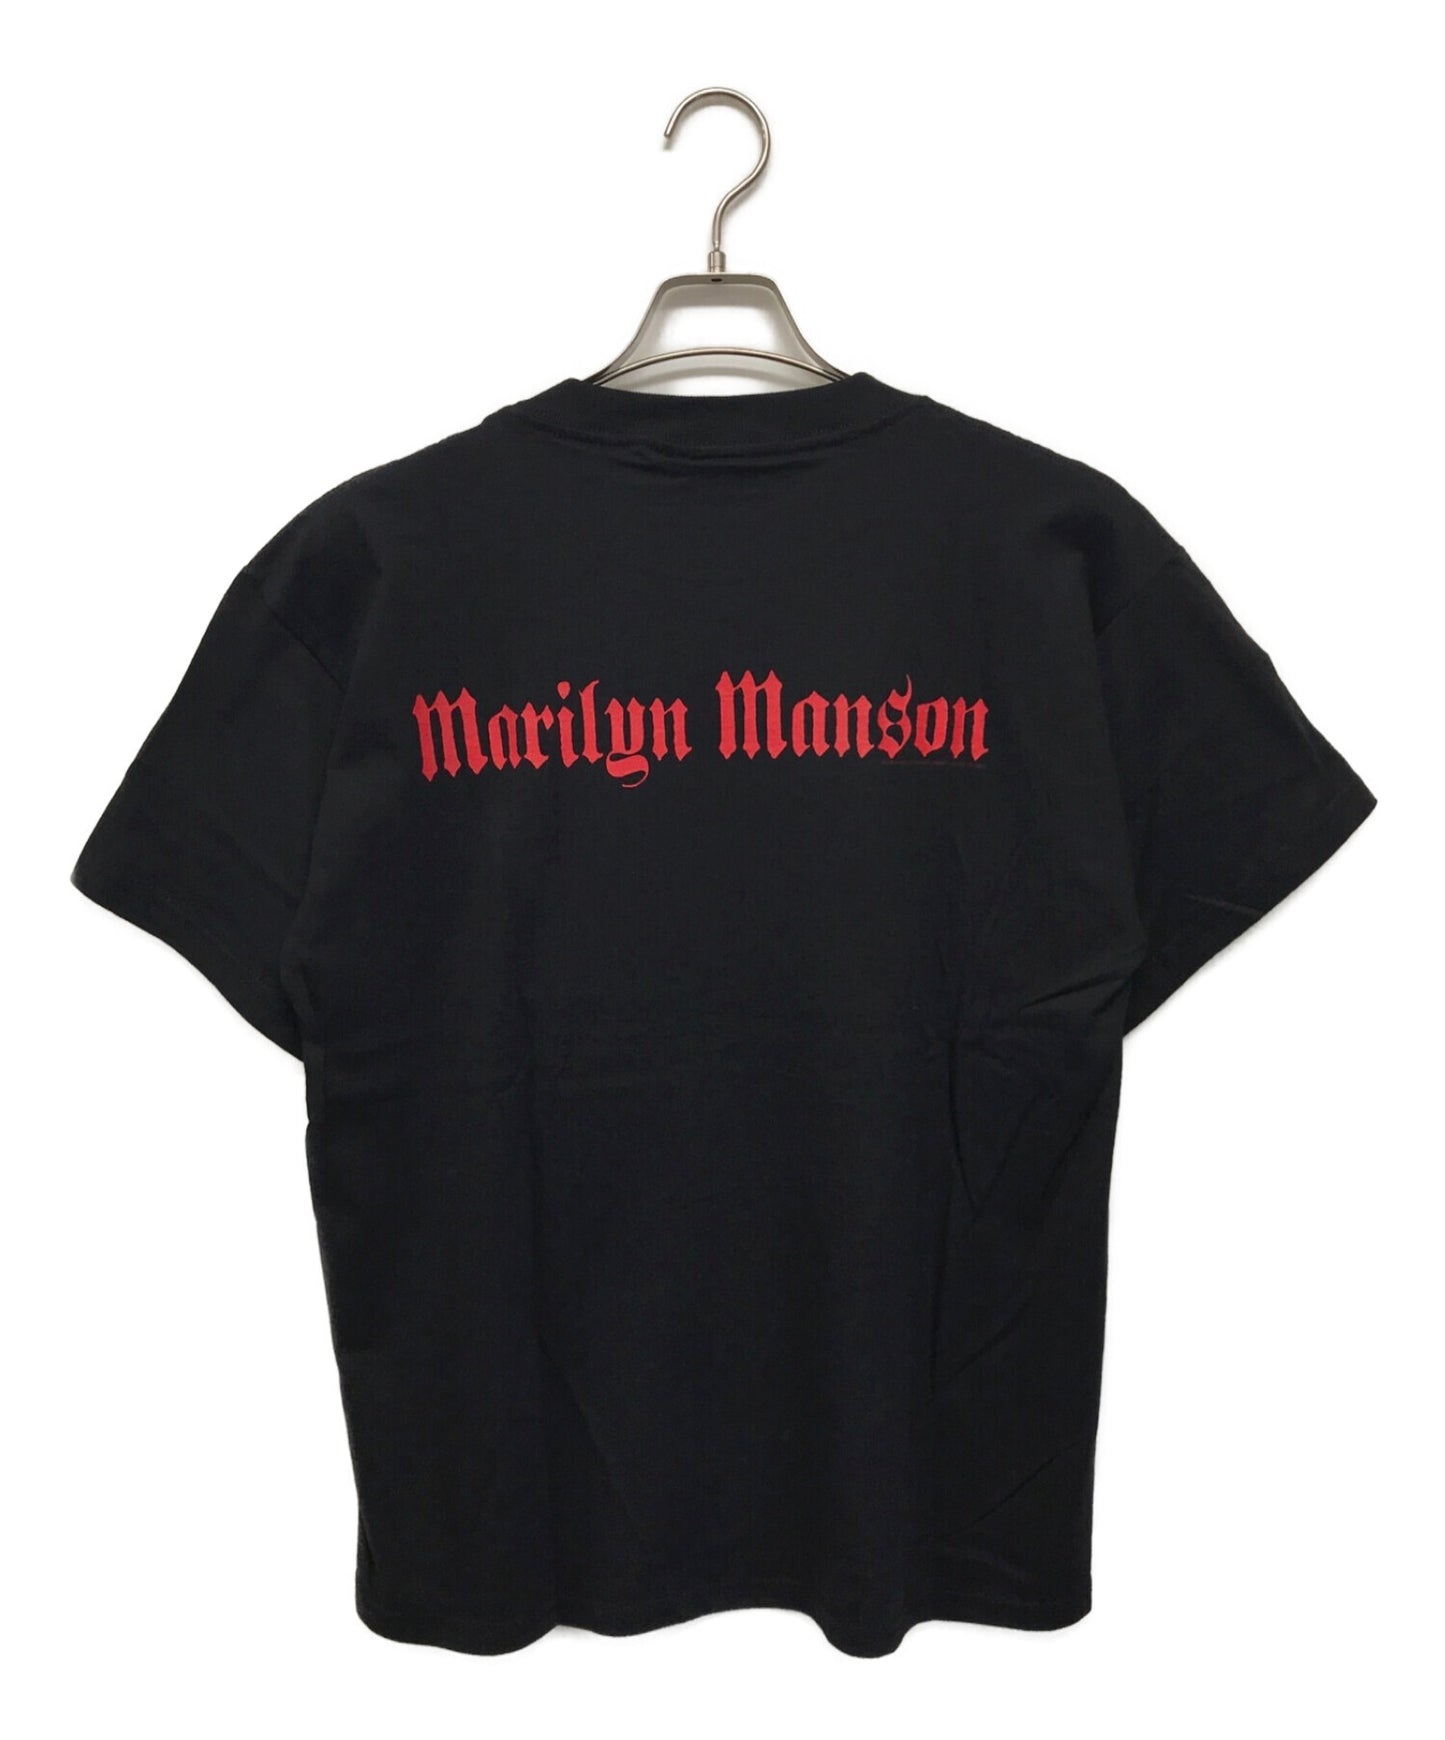 마릴린 맨슨 2000 밴드 티셔츠